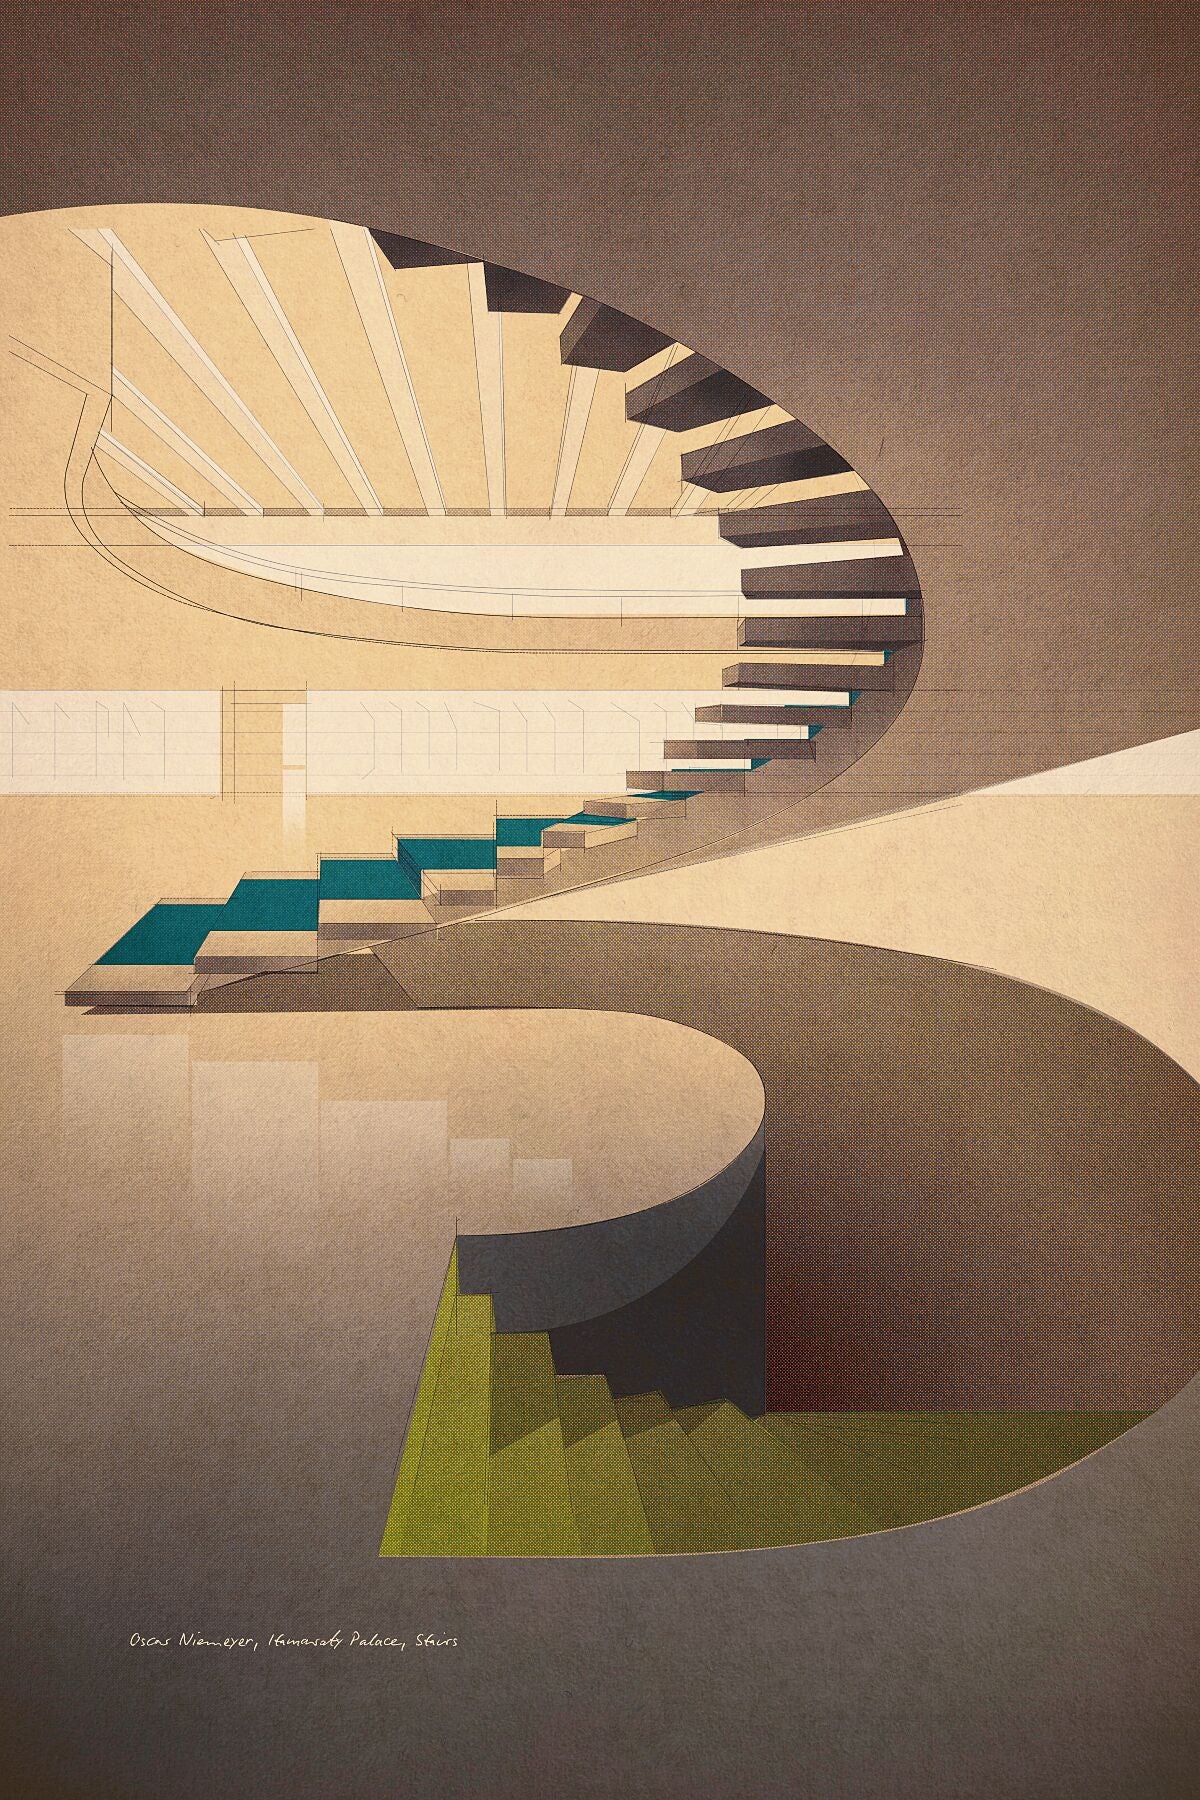 Oscar Niemeyer, Itamaraty Palace, Stairs